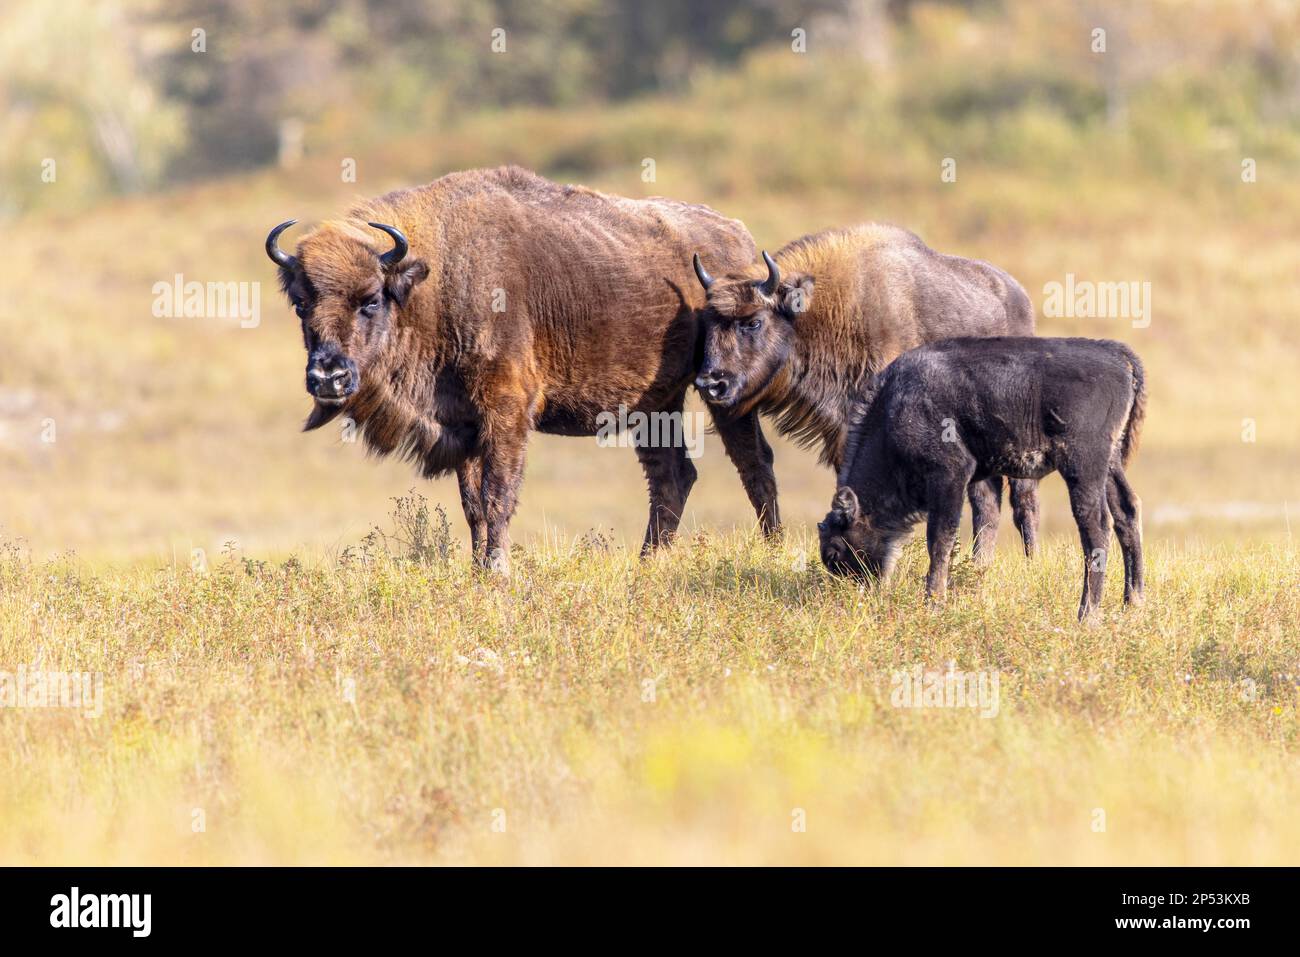 Wisent oder Europäische Bisons (Bison bonasus) im Nationalpark Zuid Kennemerland in den Niederlanden. Wildtiere in Europa. Stockfoto